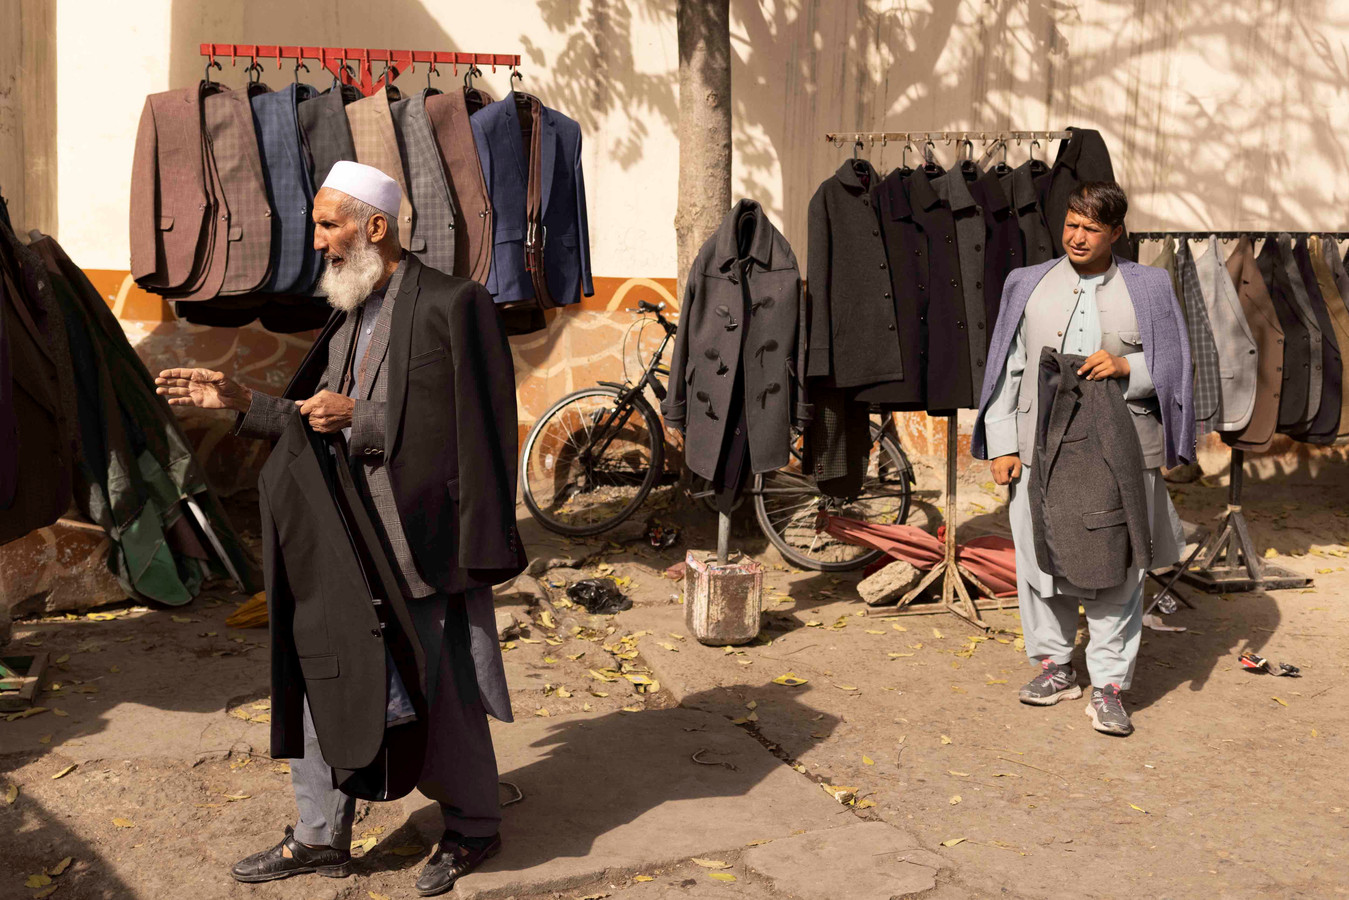 Verkopers van jassen op straat in Afghanistan.